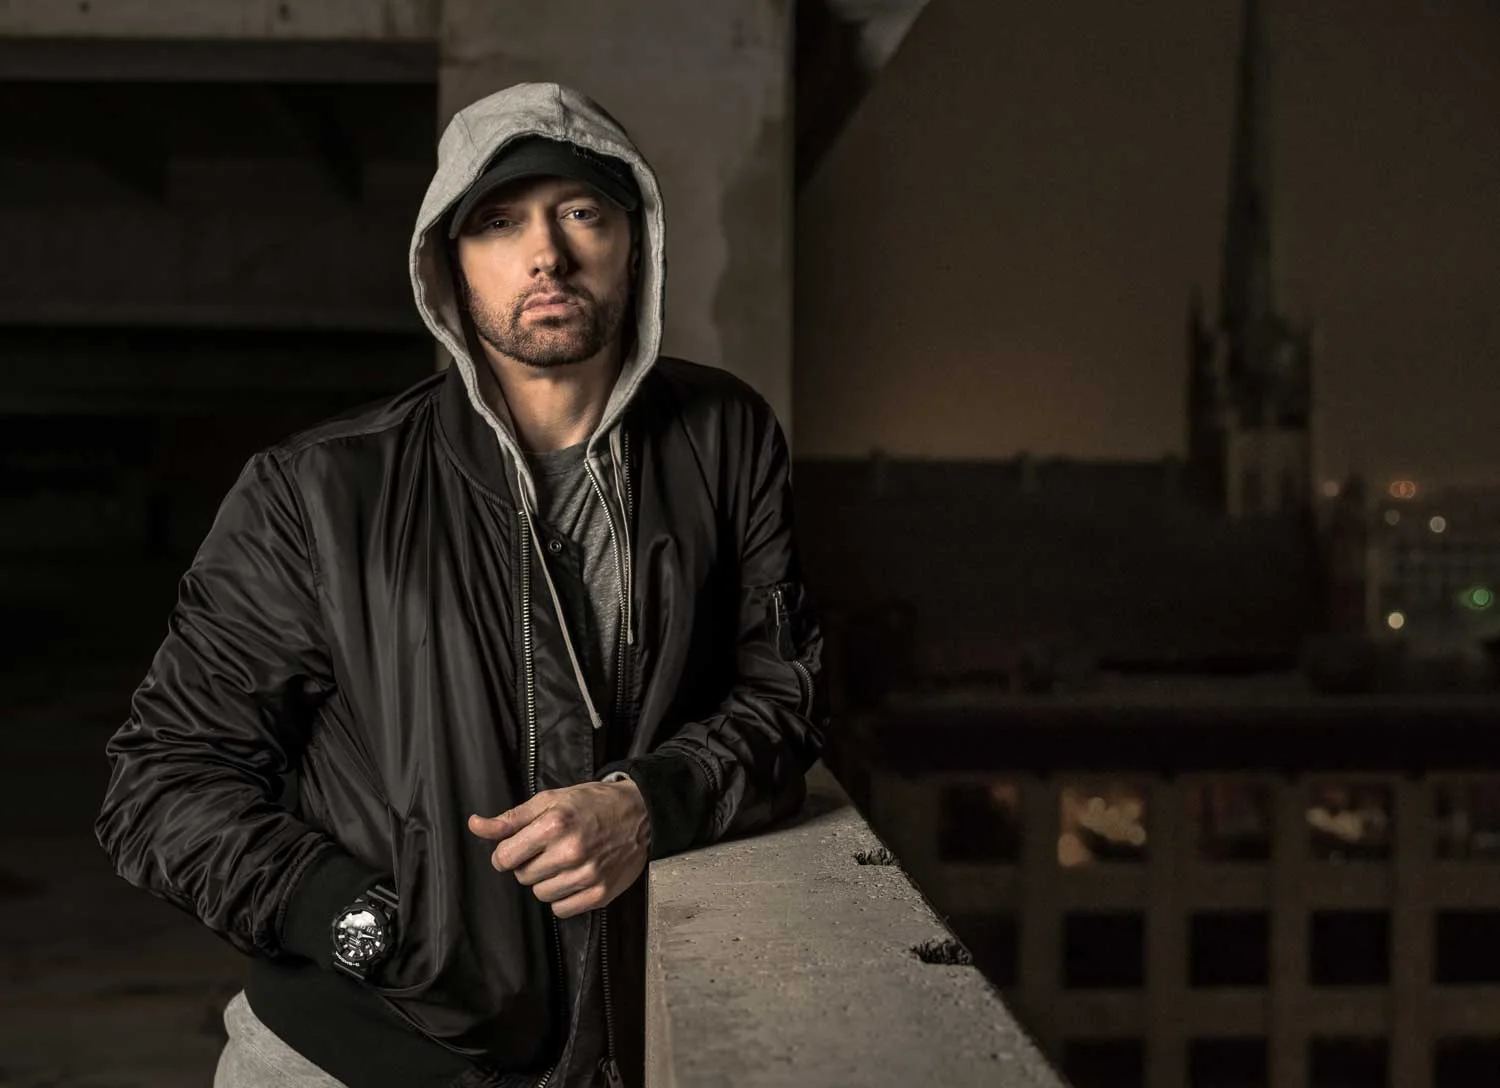 Теперь мы знаем треклист нового альбома Eminem — Revival. Узнайте и вы! - фото 1